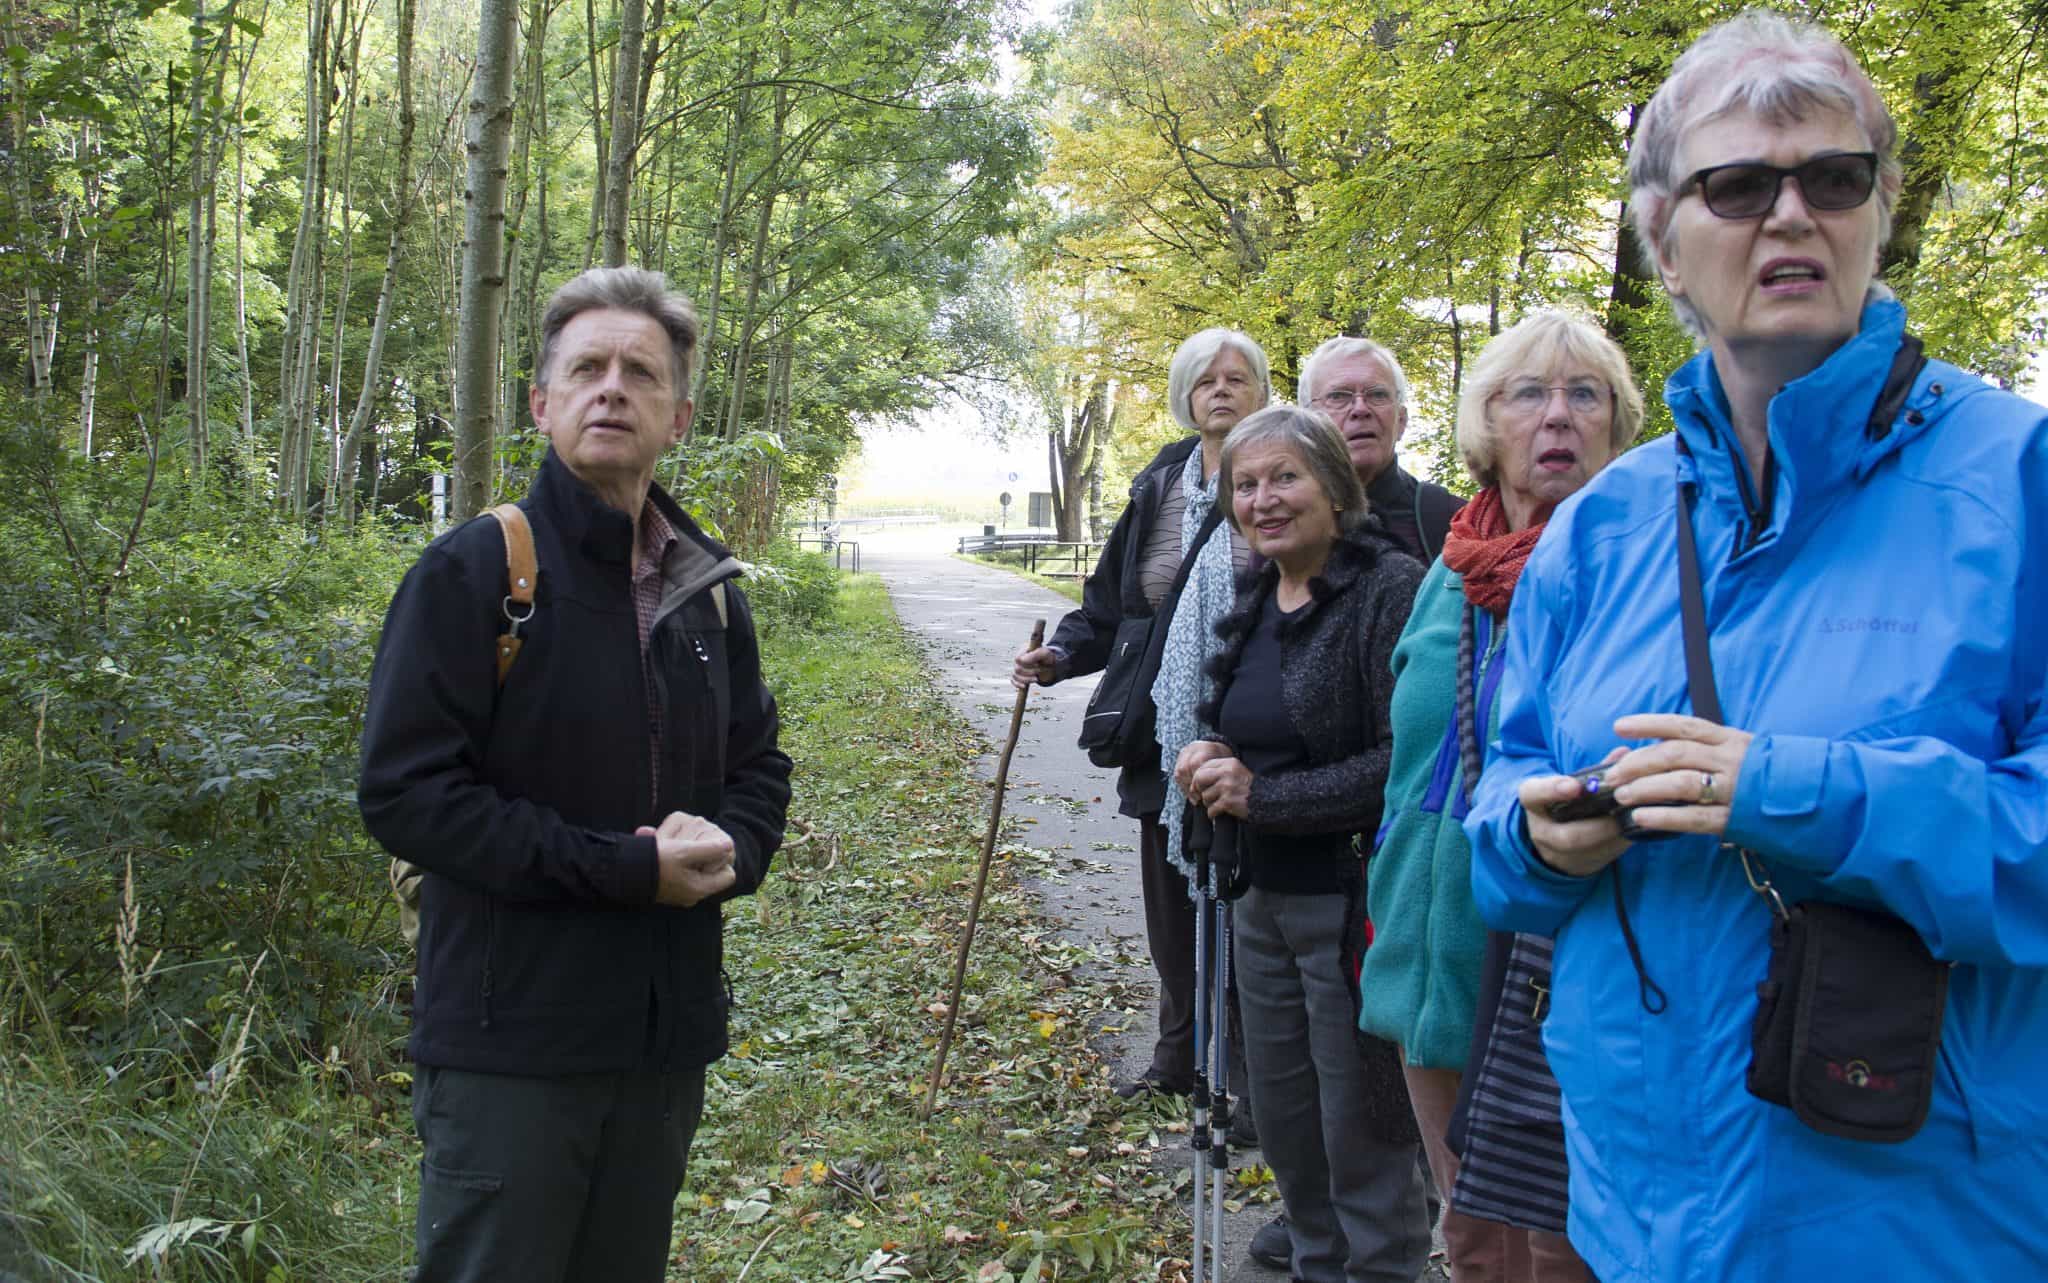 Führung durch den Wald: Der ehemalige Forstamtsleiter Hans-Jürgen Gulder erklärt das Eschentriebsterben